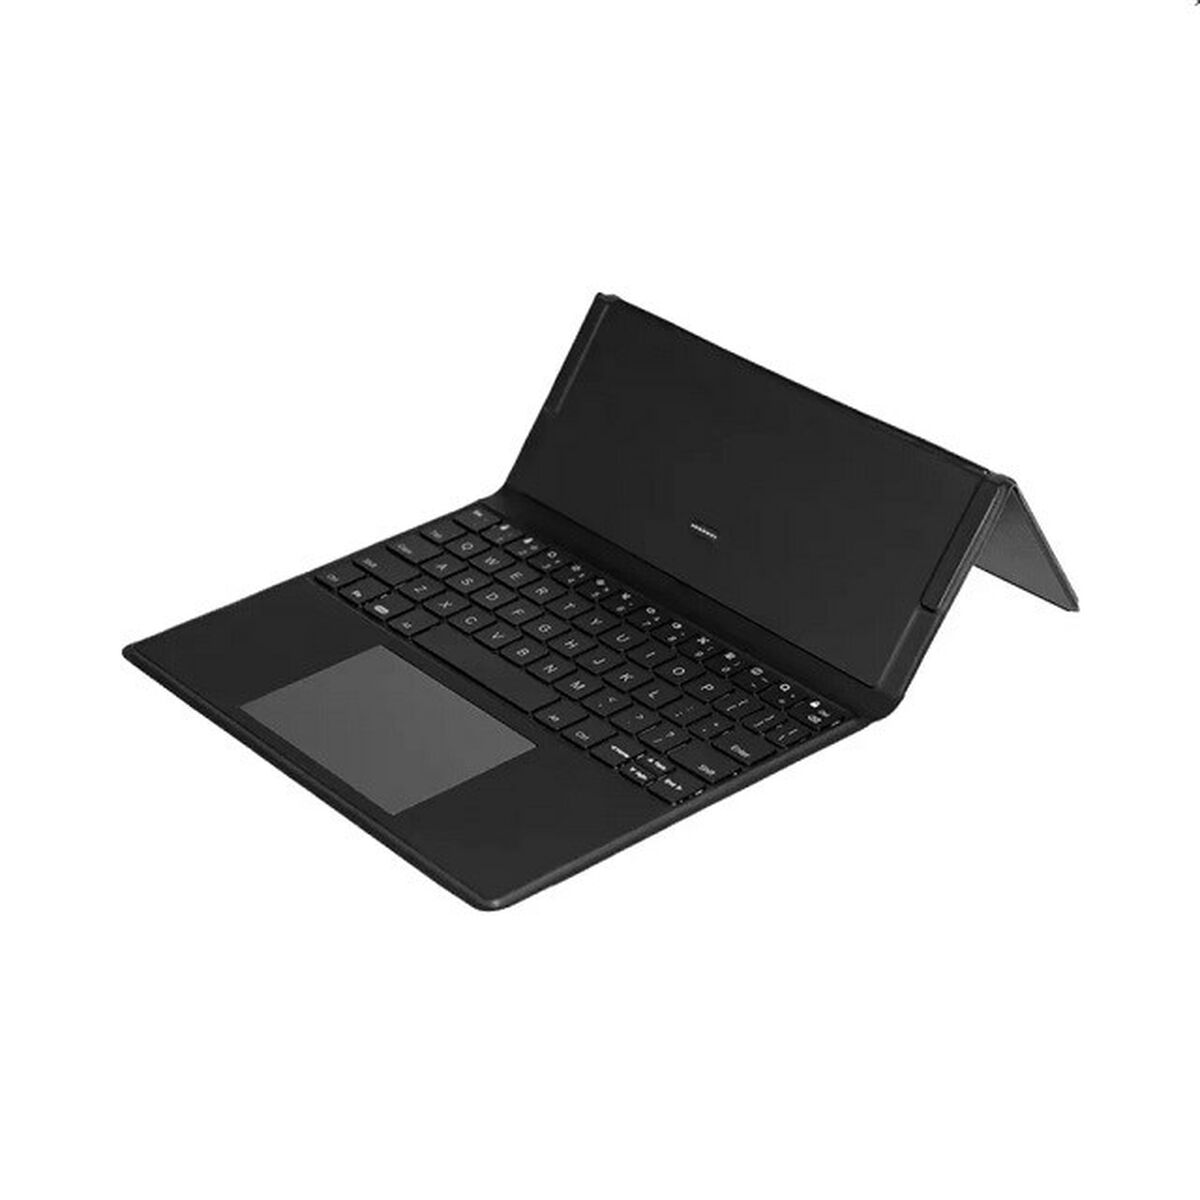 Case til tablet og tastatur Onyx Boox ULTRA C PRO